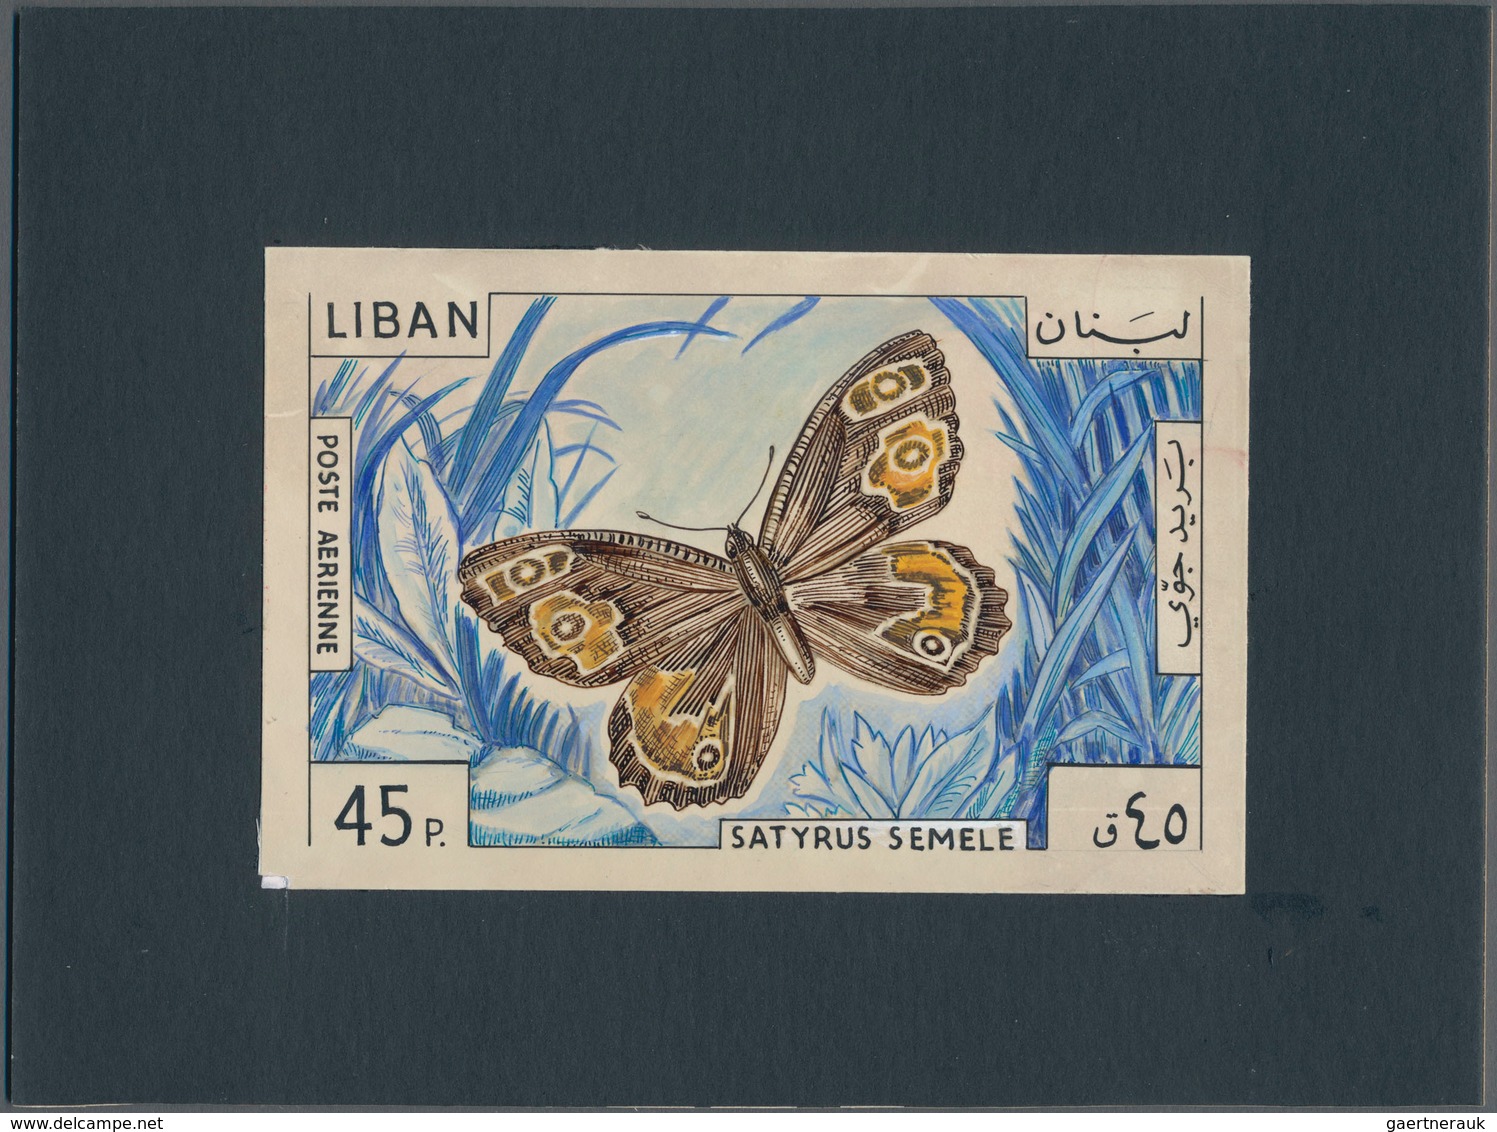 Thematik: Tiere-Schmetterlinge / Animals-butterflies: 1965, Libanon, Issue Butterflys, Artist Drawin - Butterflies